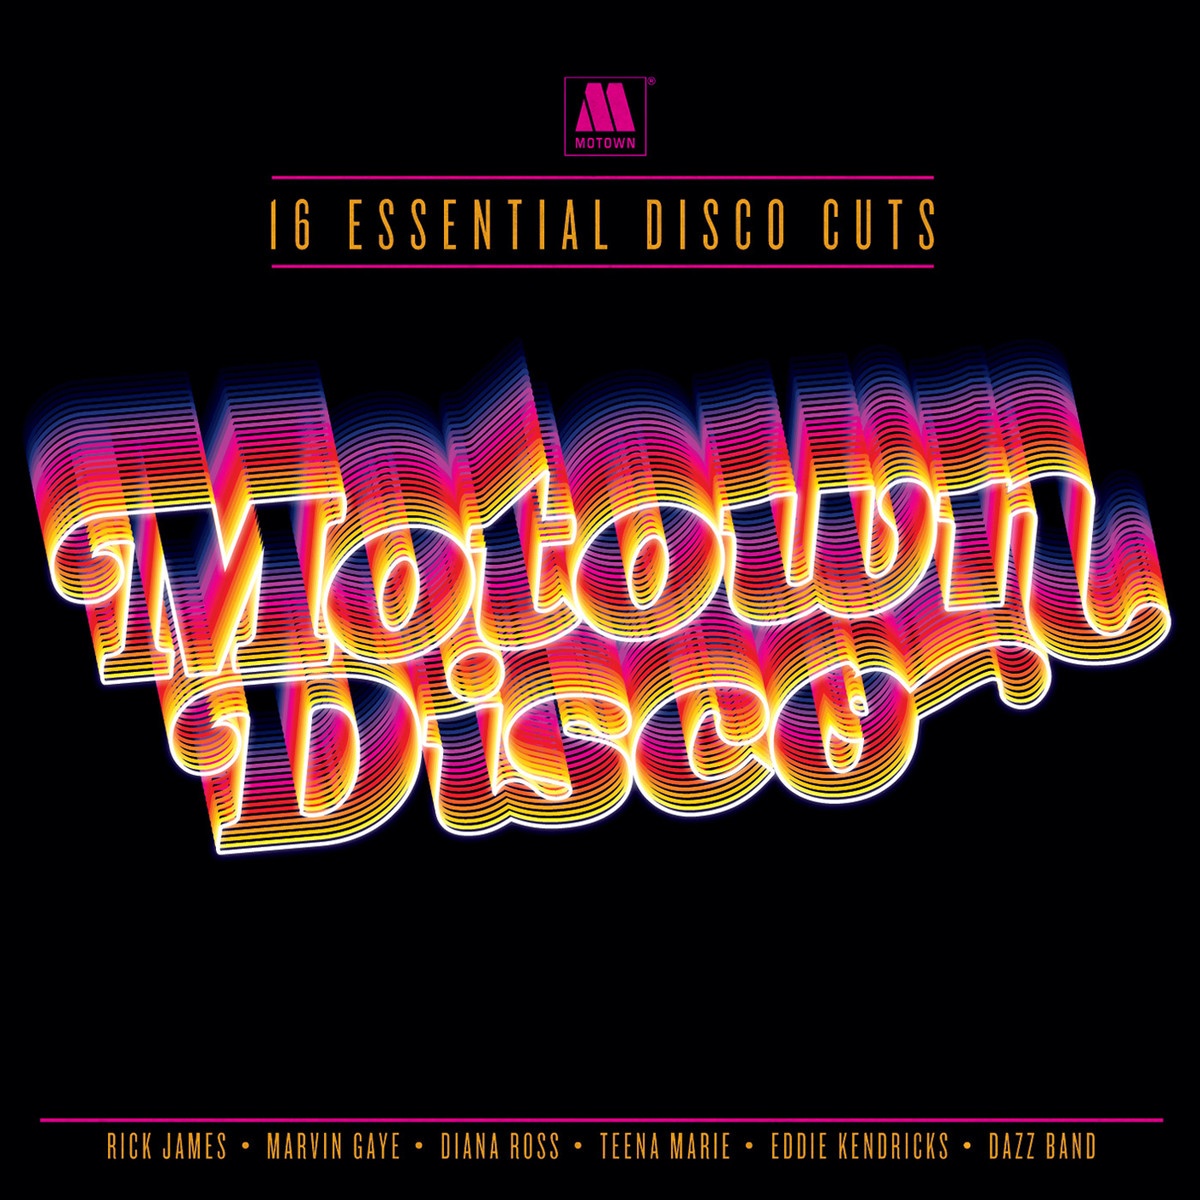 Motown Disco